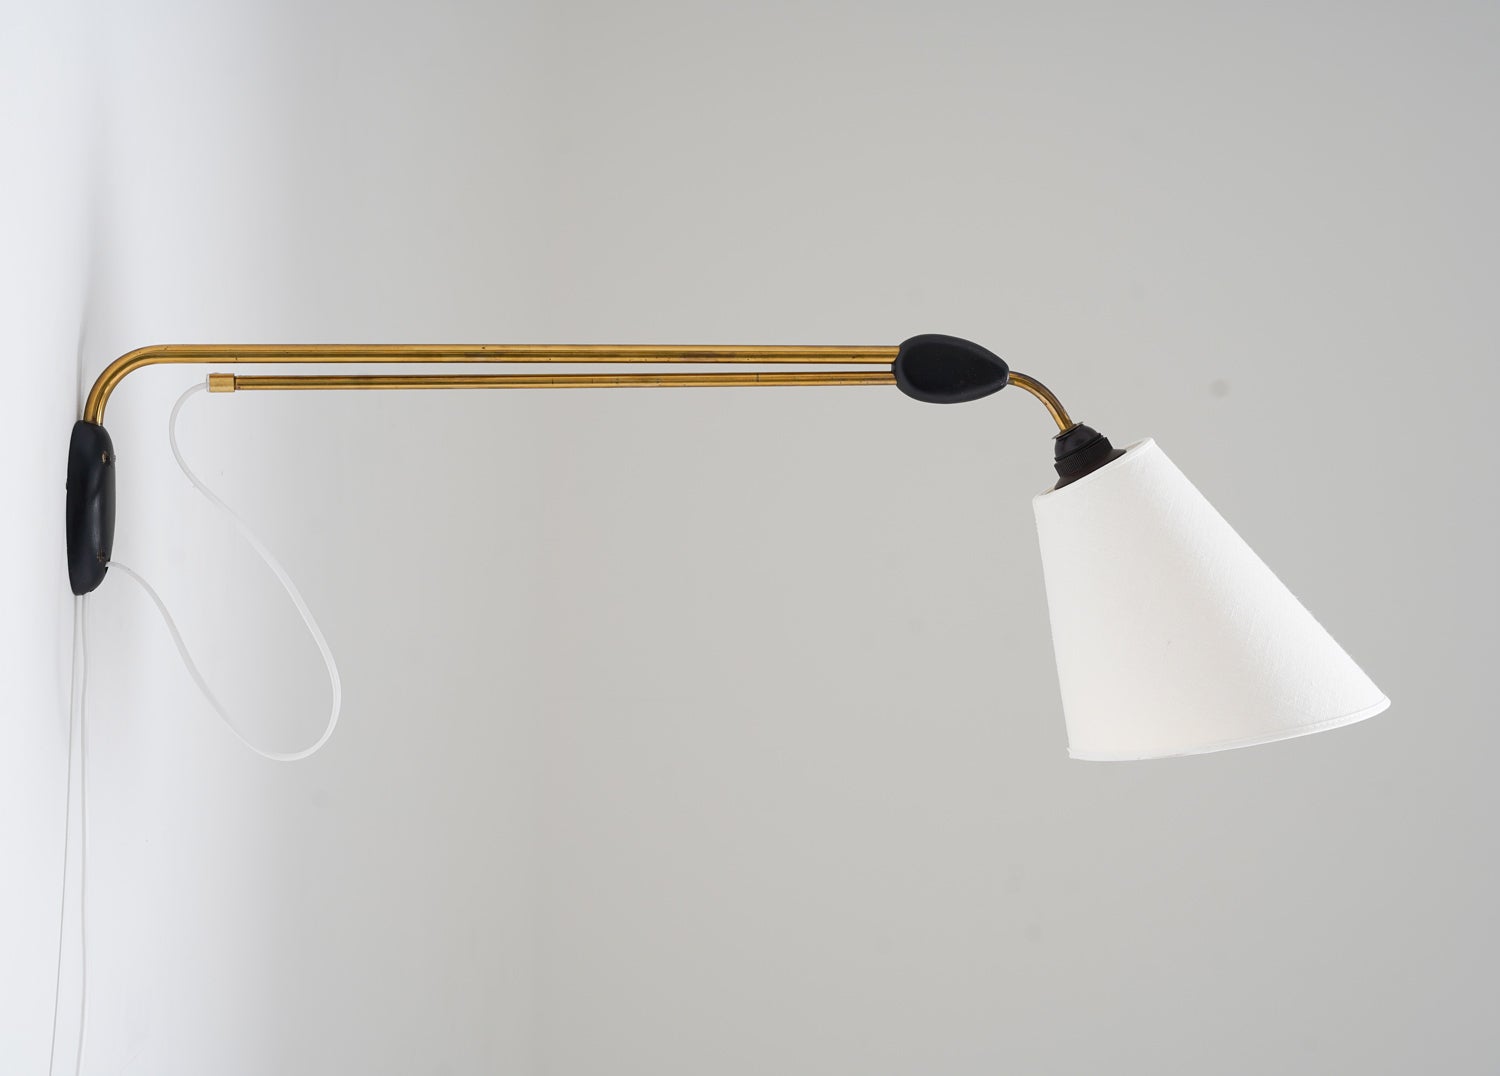 Schöne Wandlampe, hergestellt in Schweden um 1950 von Pagos.
Die Lampe besteht aus zwei Messingstäben, die durch ein Holzstück verbunden sind, wobei sich der untere Stab verschieben lässt, um die Länge zu verlängern. Die Länge kann zwischen 88 und